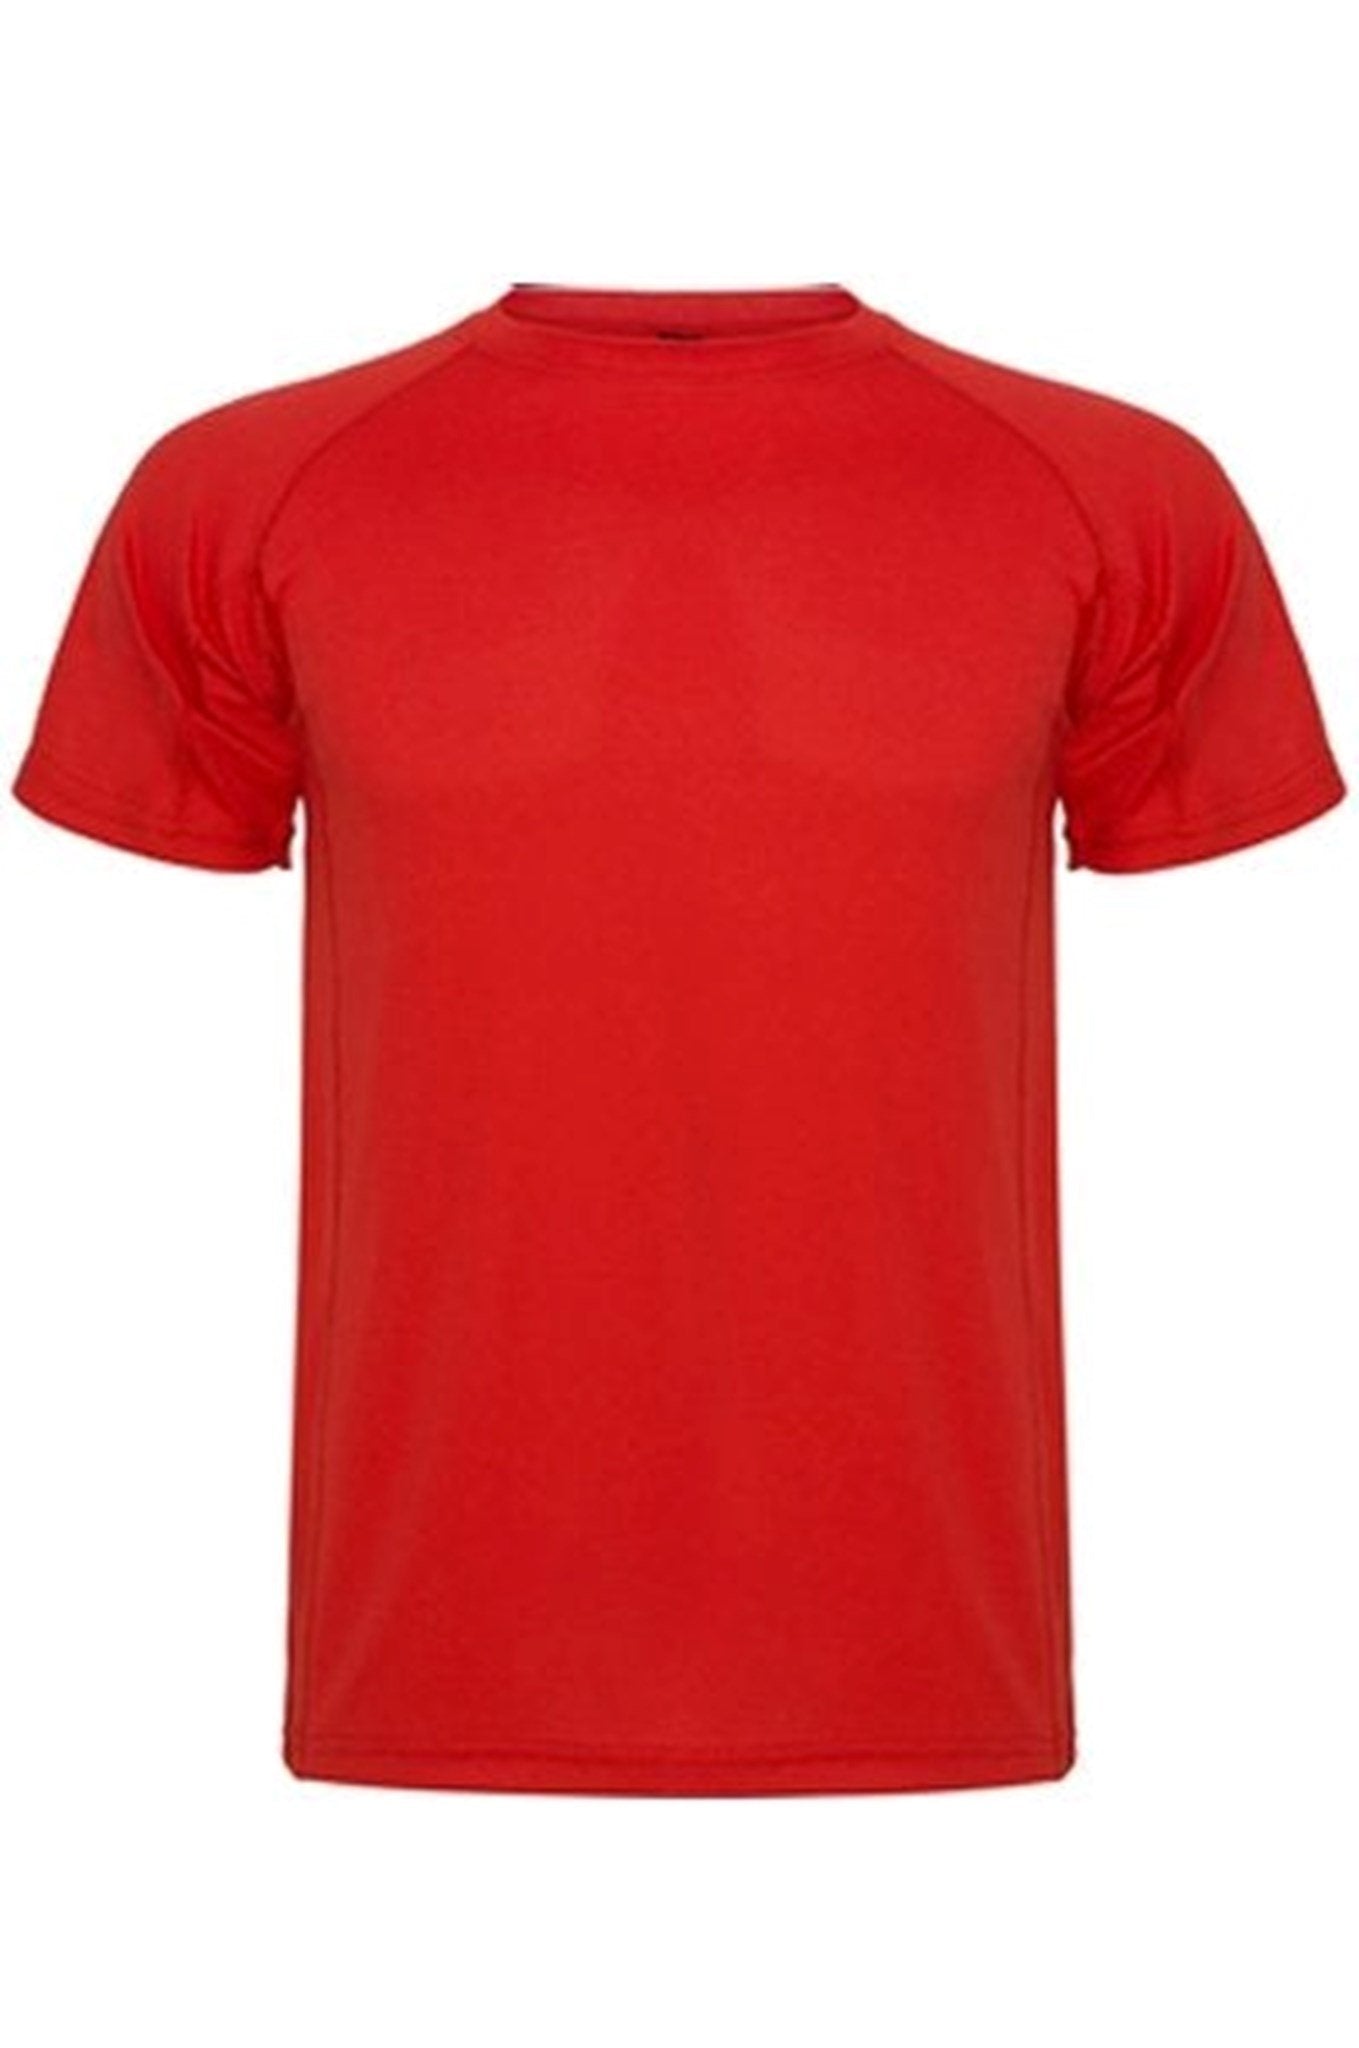 Trænings T-shirt - Rød - TeeShoppen - Rød